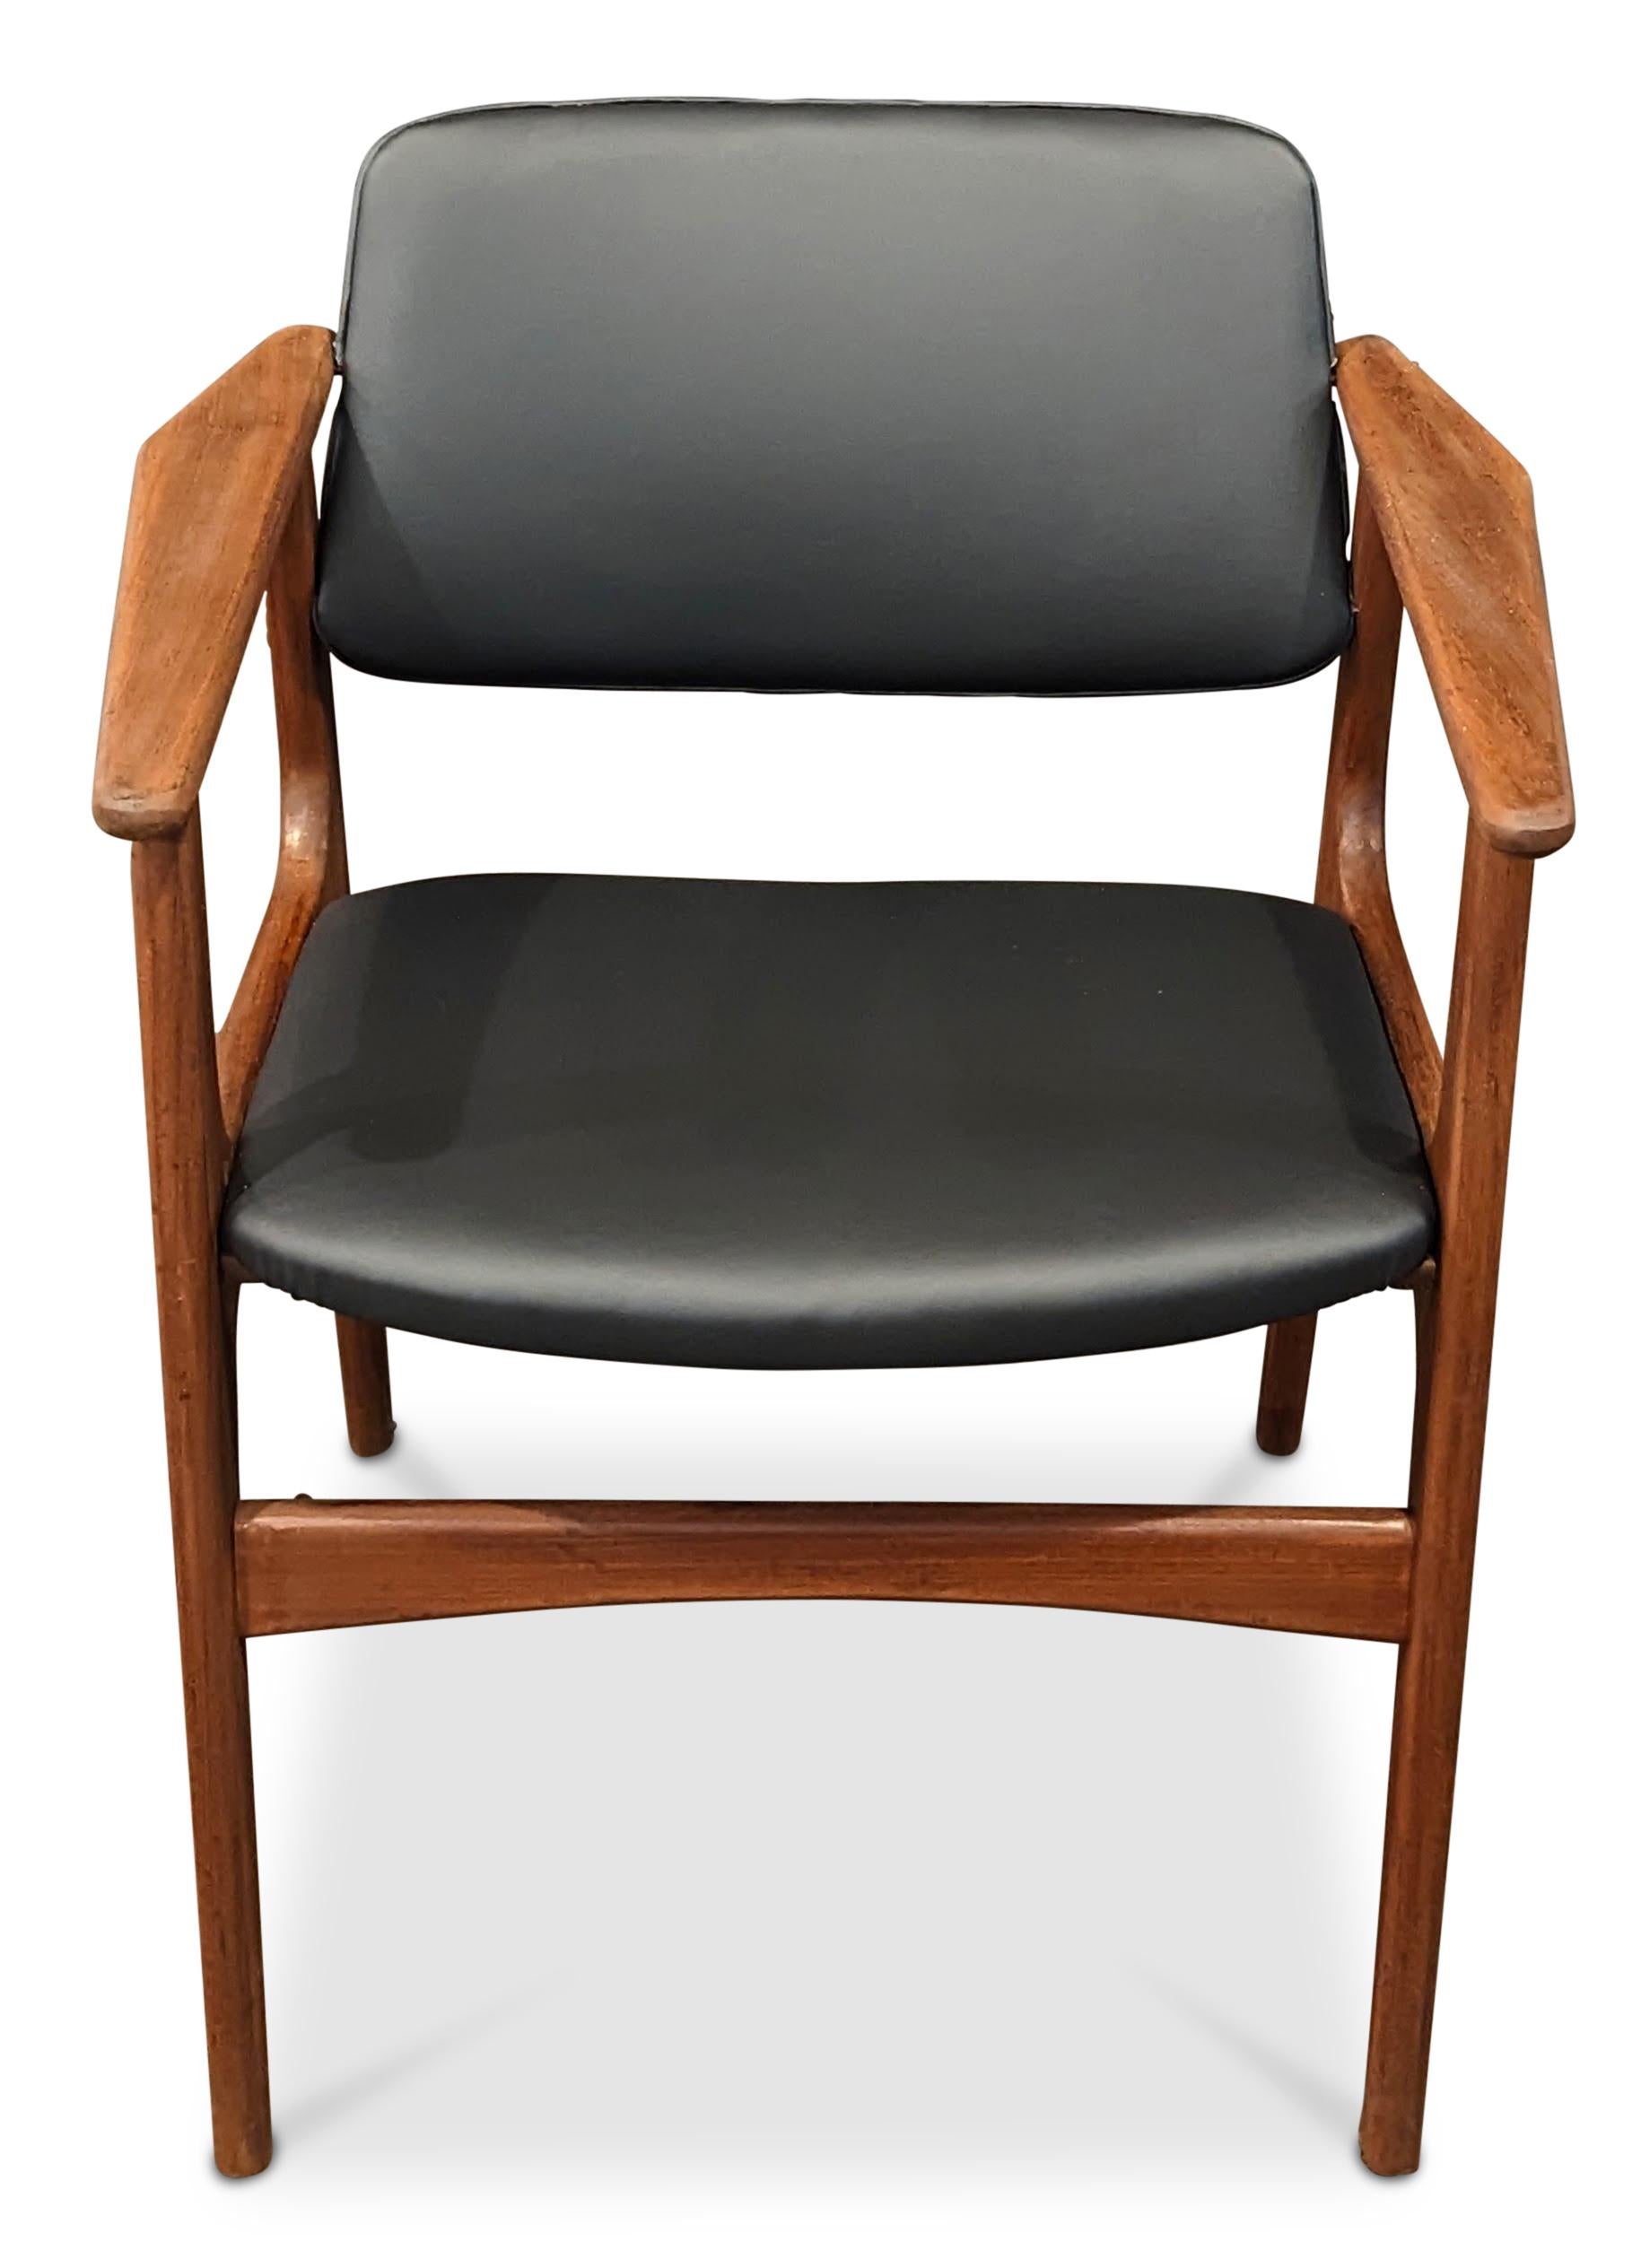 European 4 Arne Vodder Teak Arm Chairs - 072312 Vintage Danish Mid Century